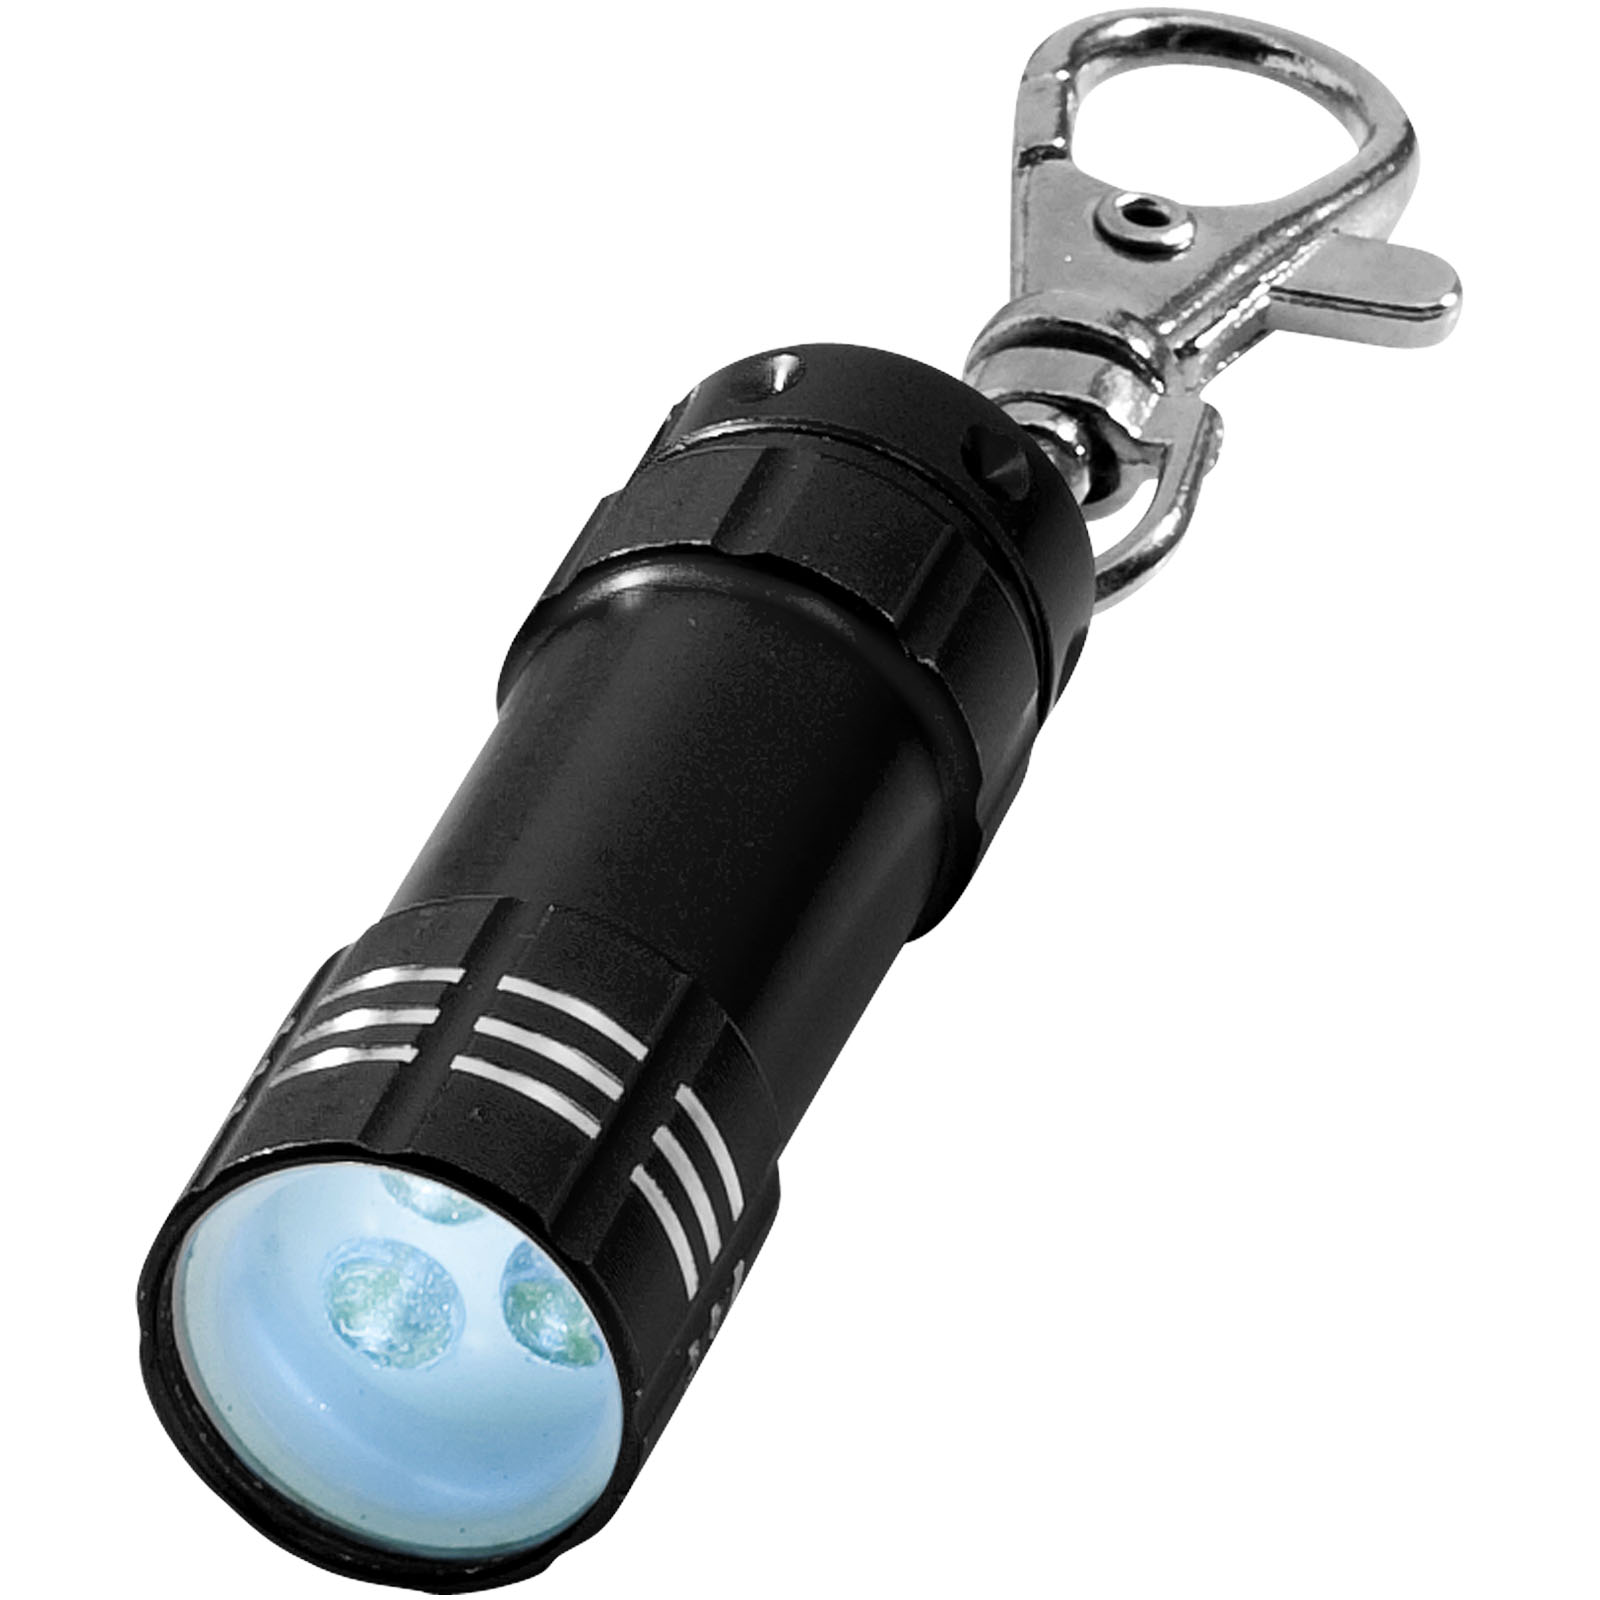 Outils et accessoires pour la voiture - Mini torche LED Astro